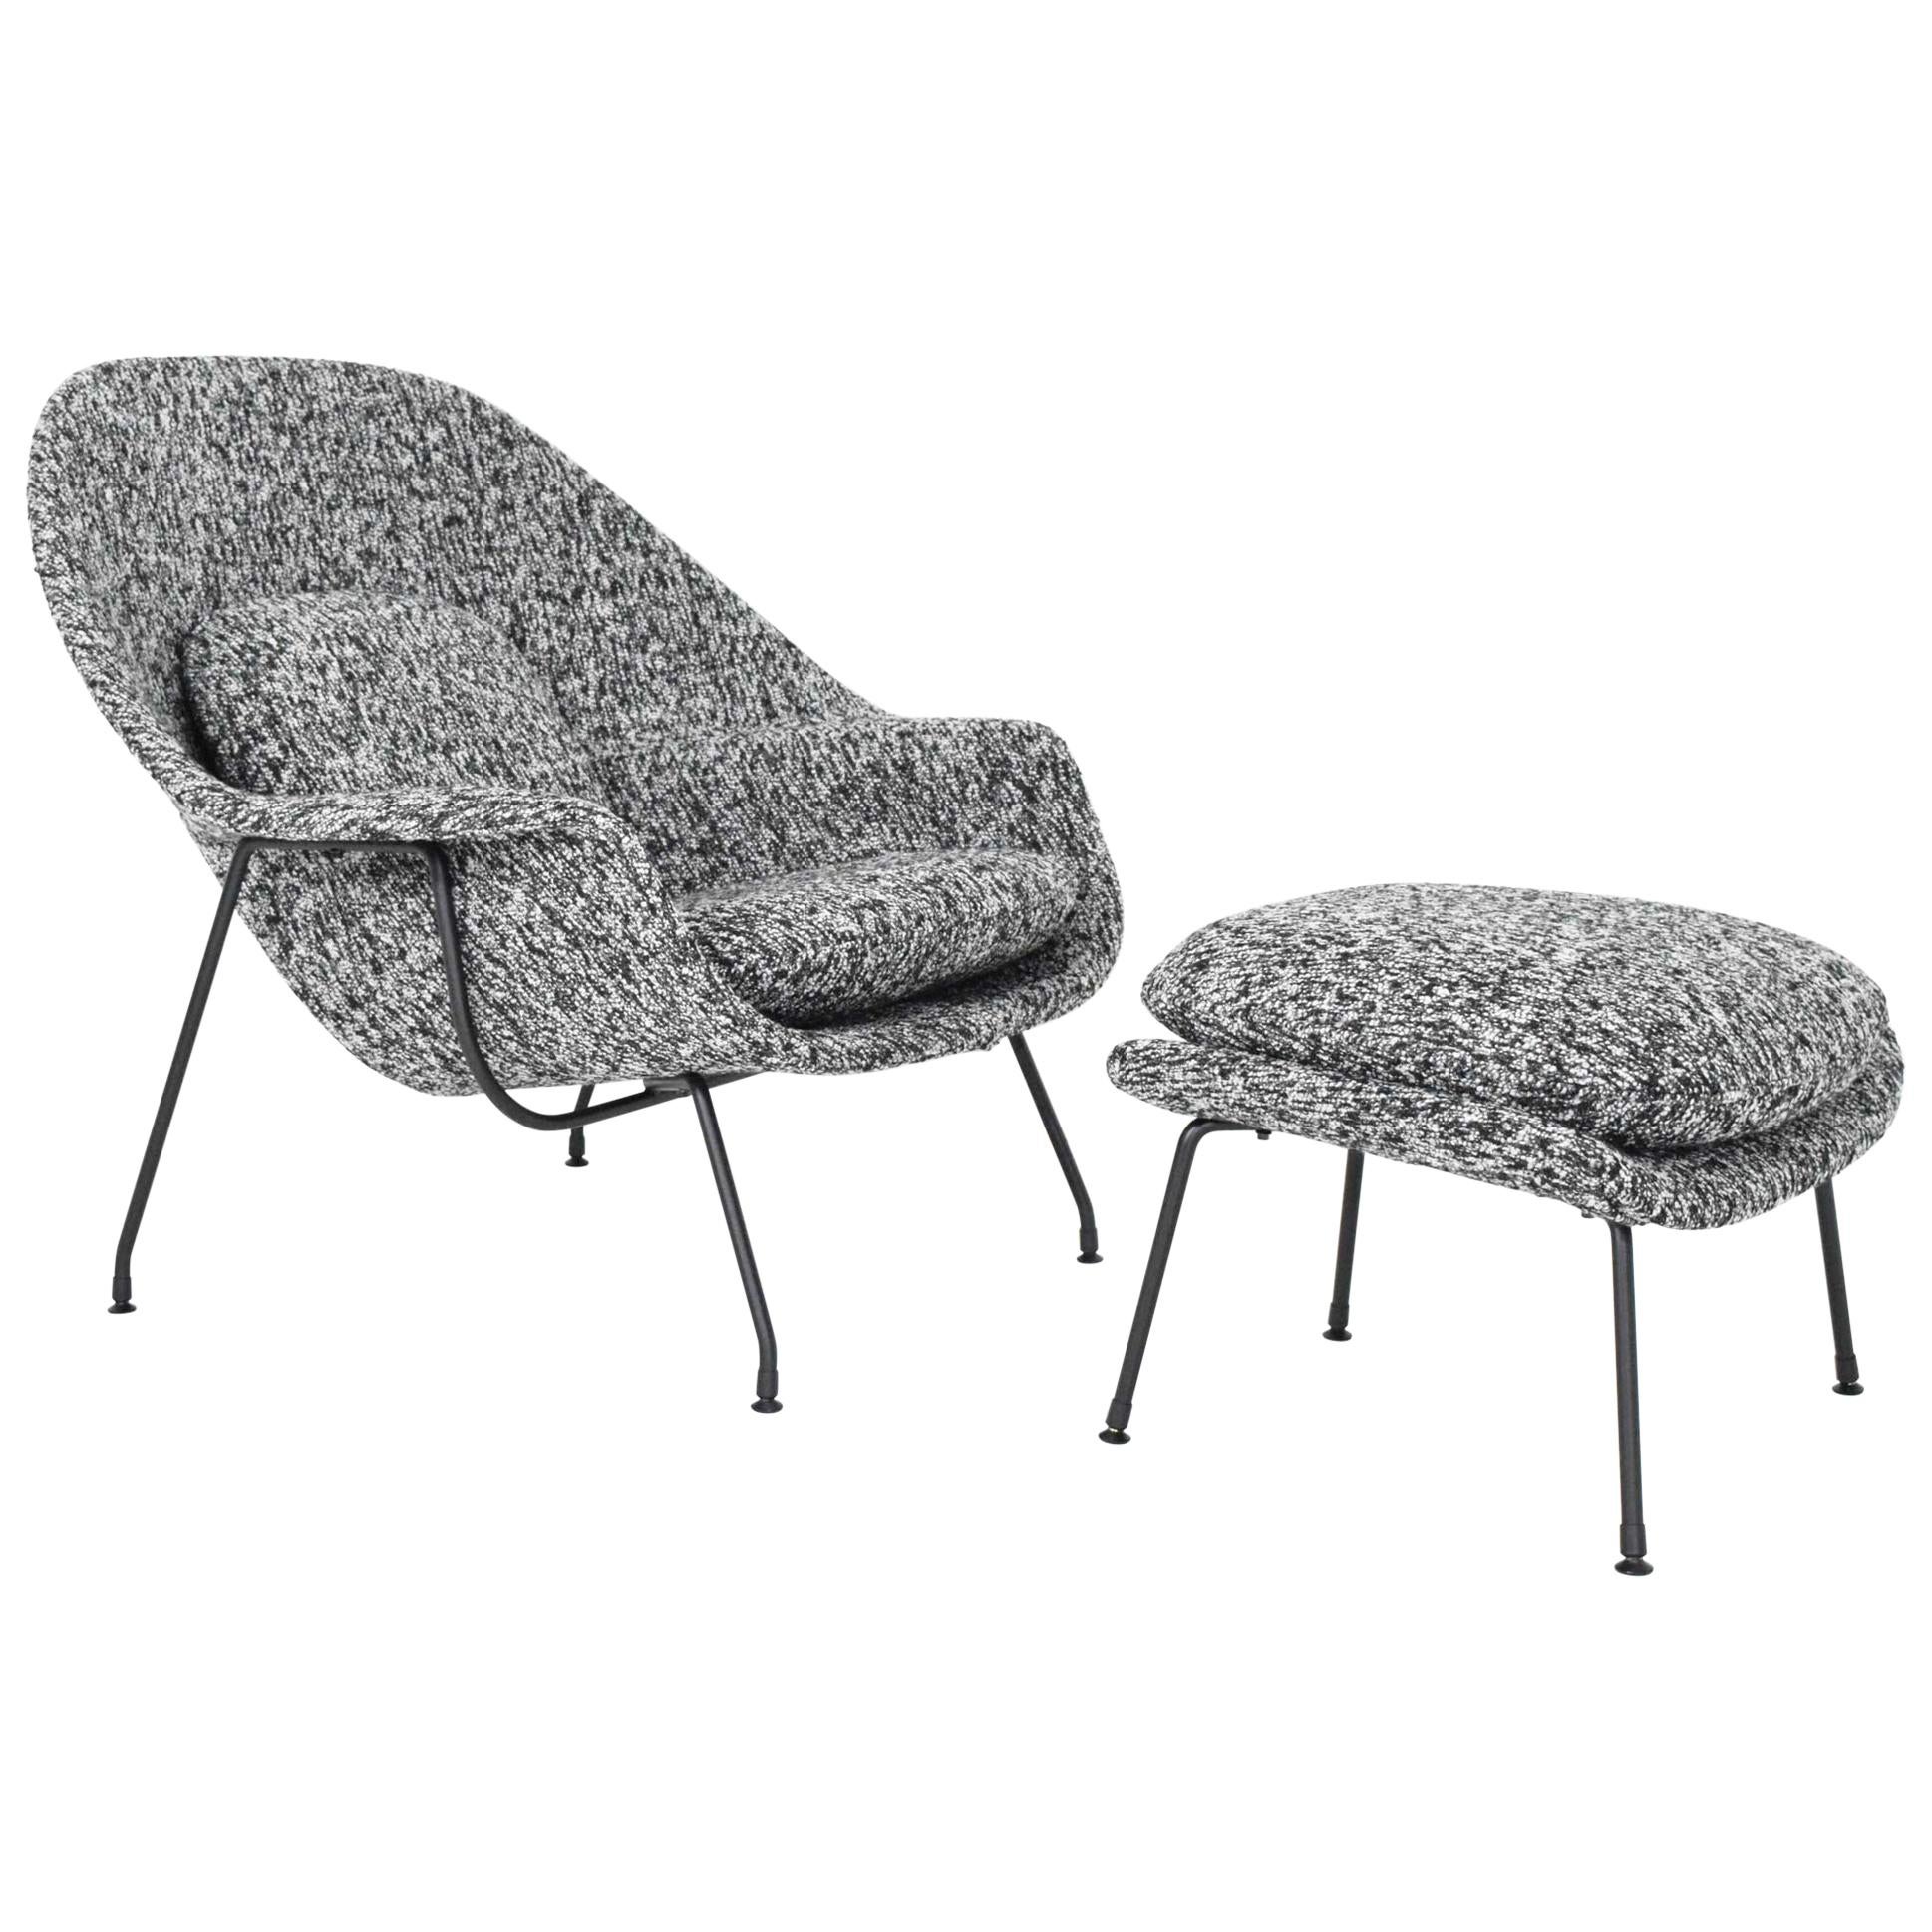 Eero Saarinen for Knoll Womb Chair and Ottoman